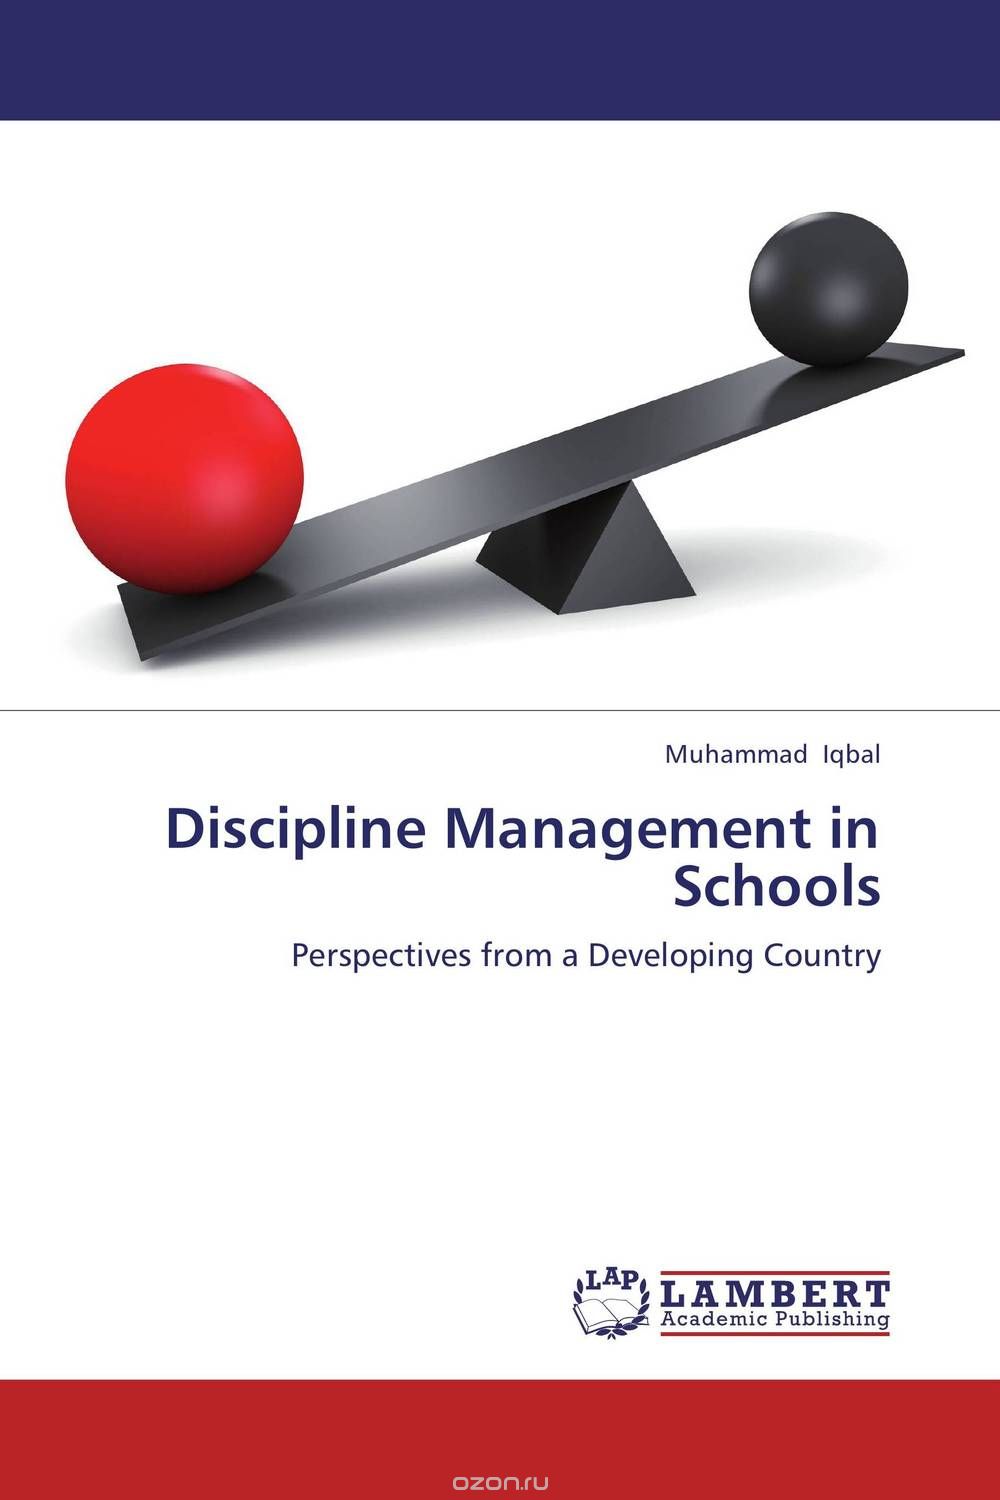 Скачать книгу "Discipline Management in Schools"